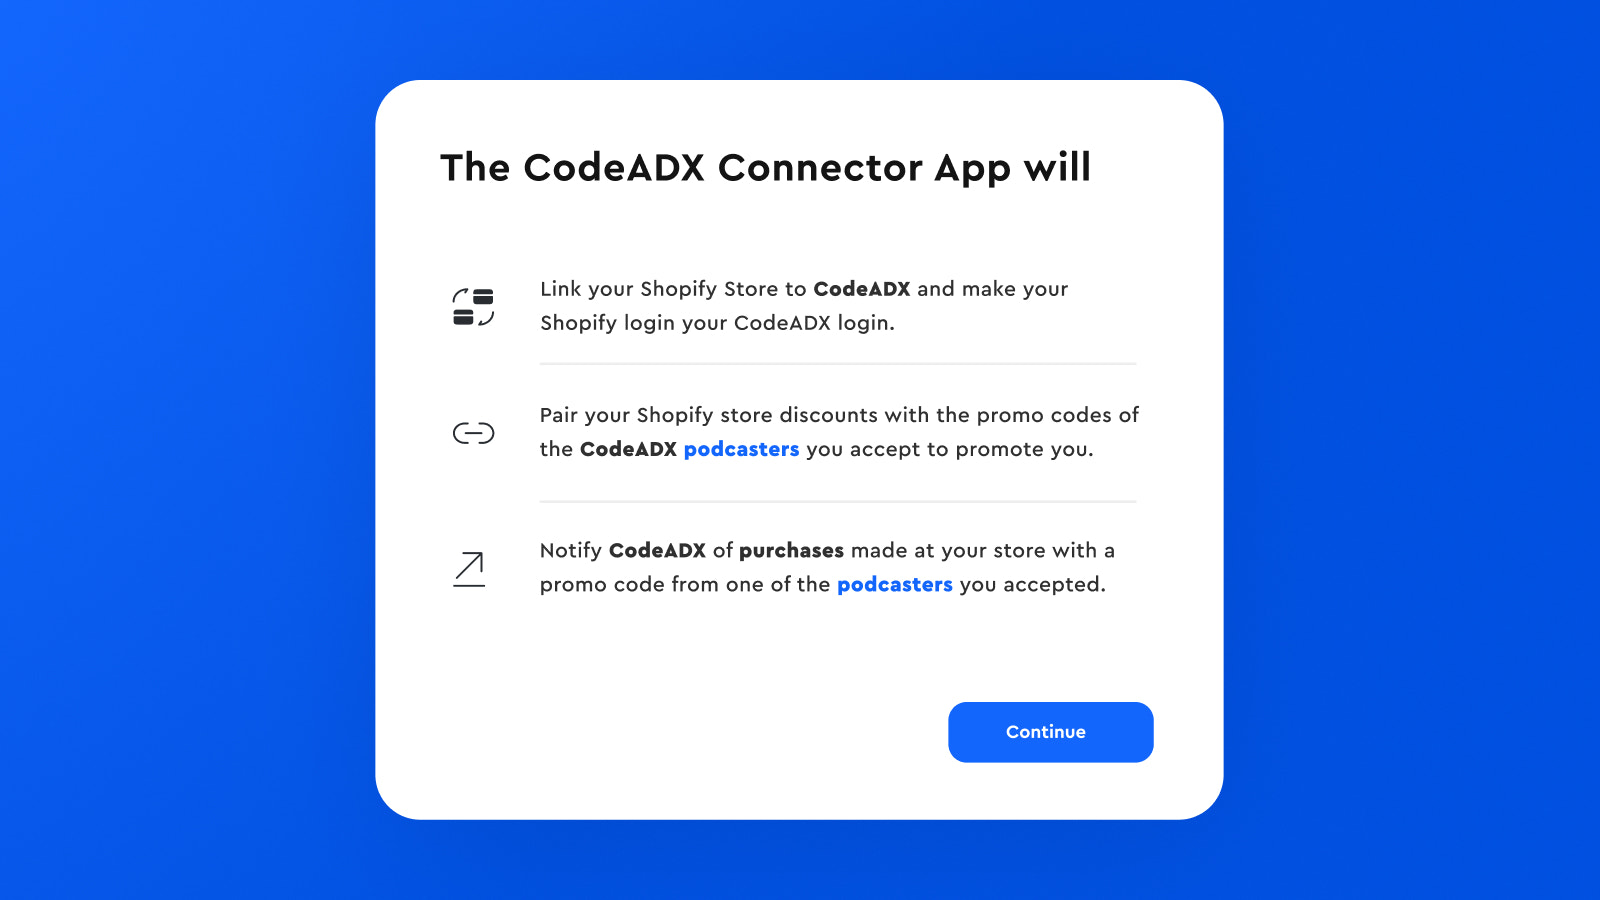 ¿Qué hará la aplicación CodeADX Connector?